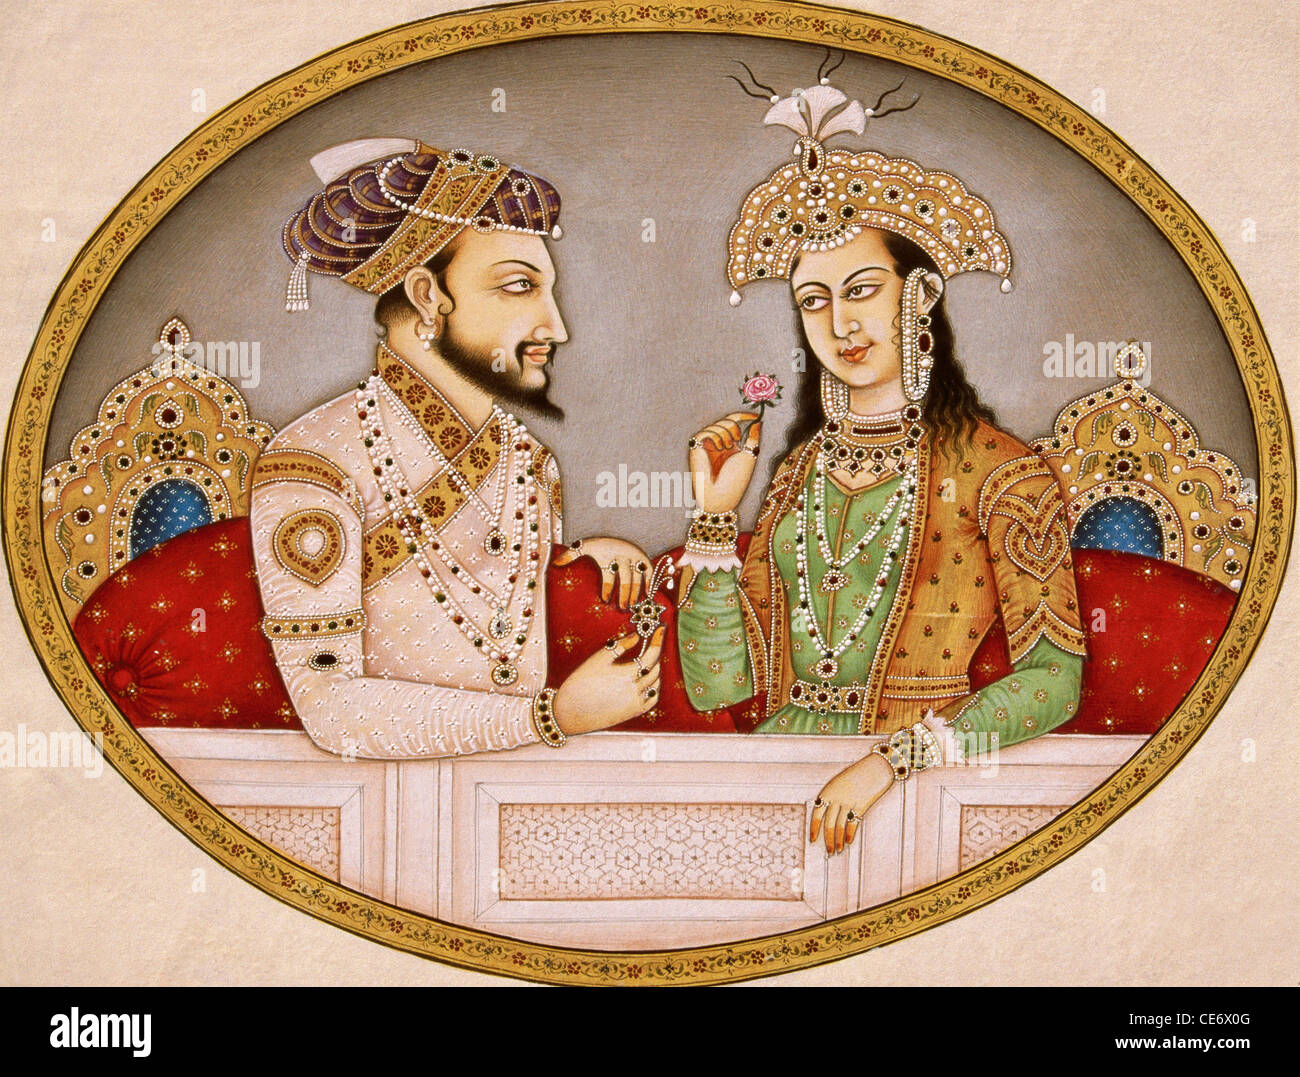 Peinture miniature de l'empereur moghol Shah Jahan avec la reine Mumtaz Mahal Inde Asie Art indien peintures asiatiques Banque D'Images